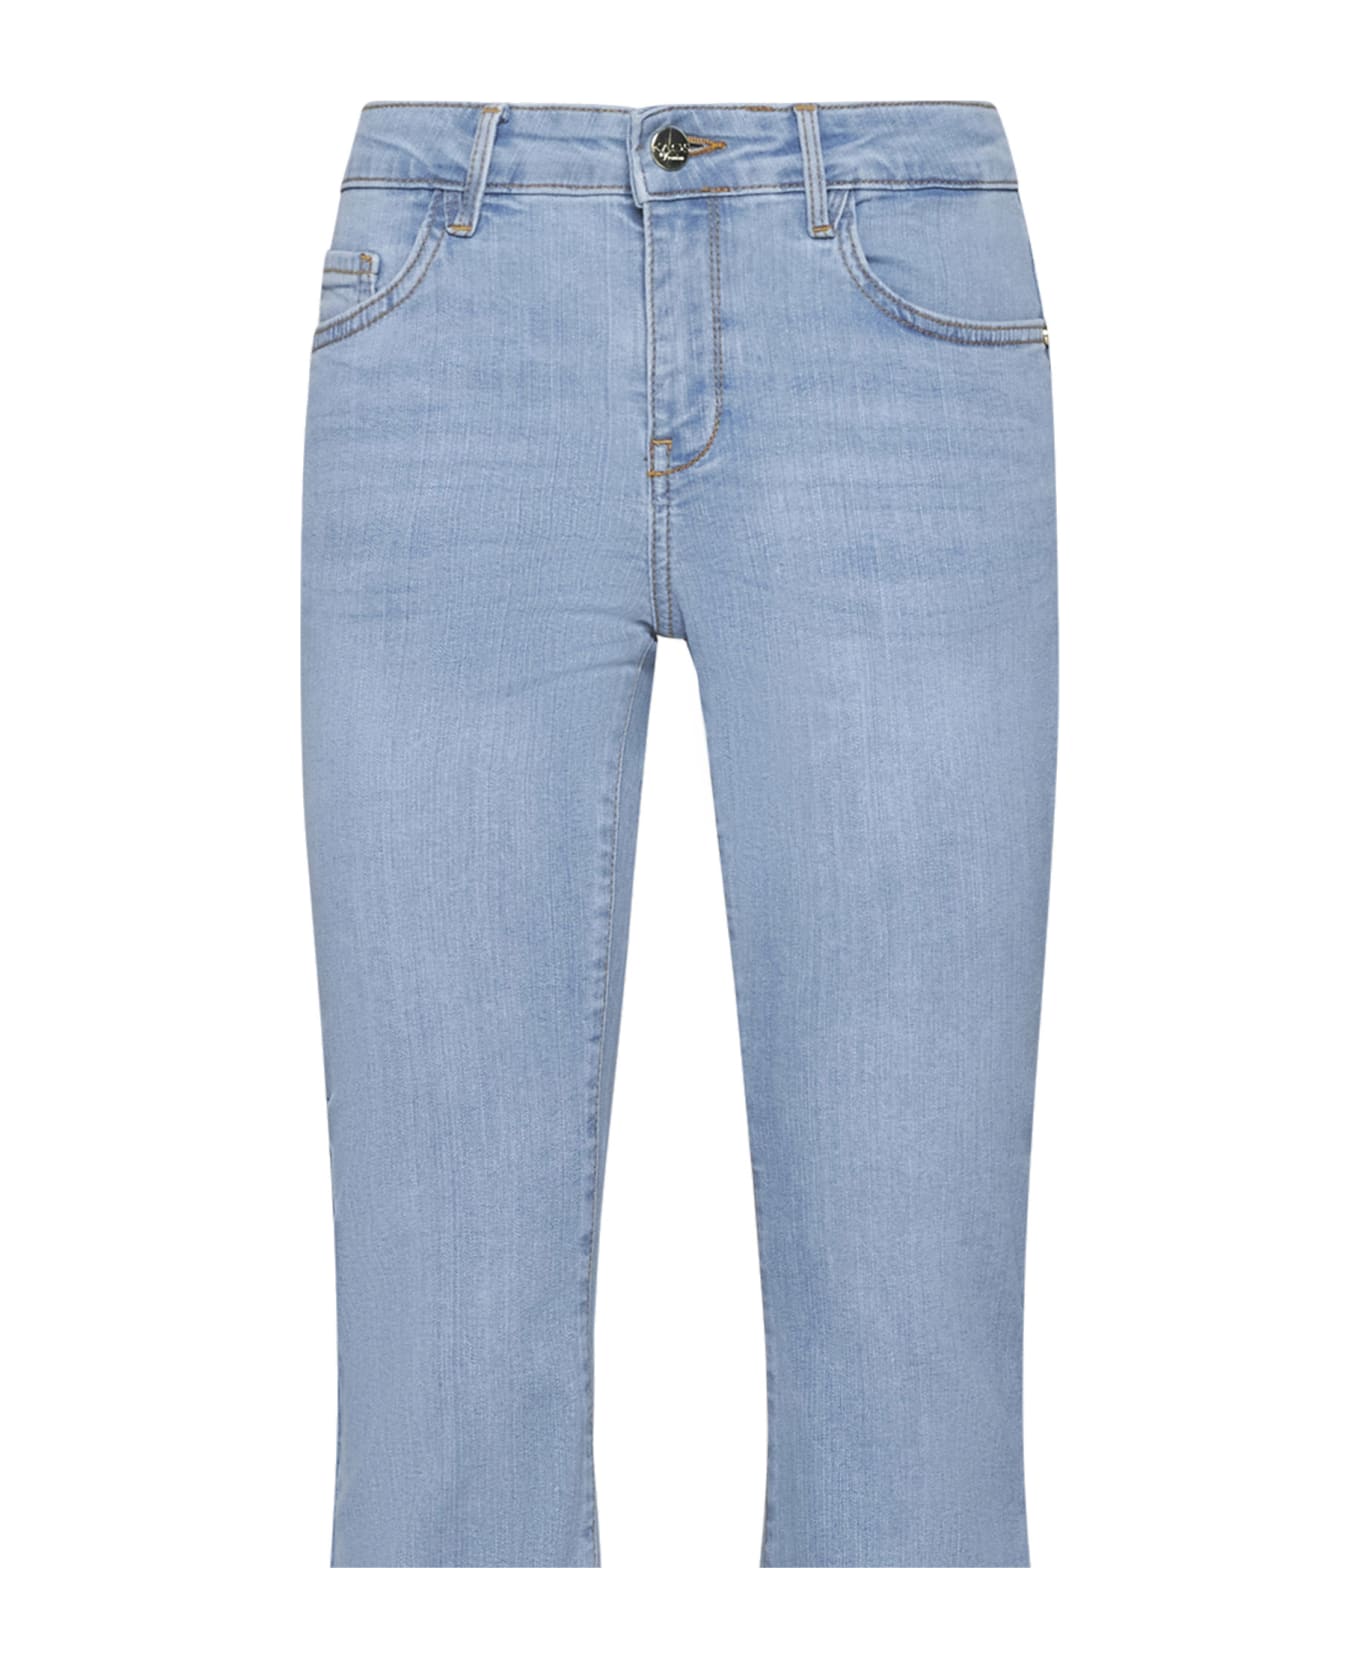 Kaos Jeans - Jeans chiaro